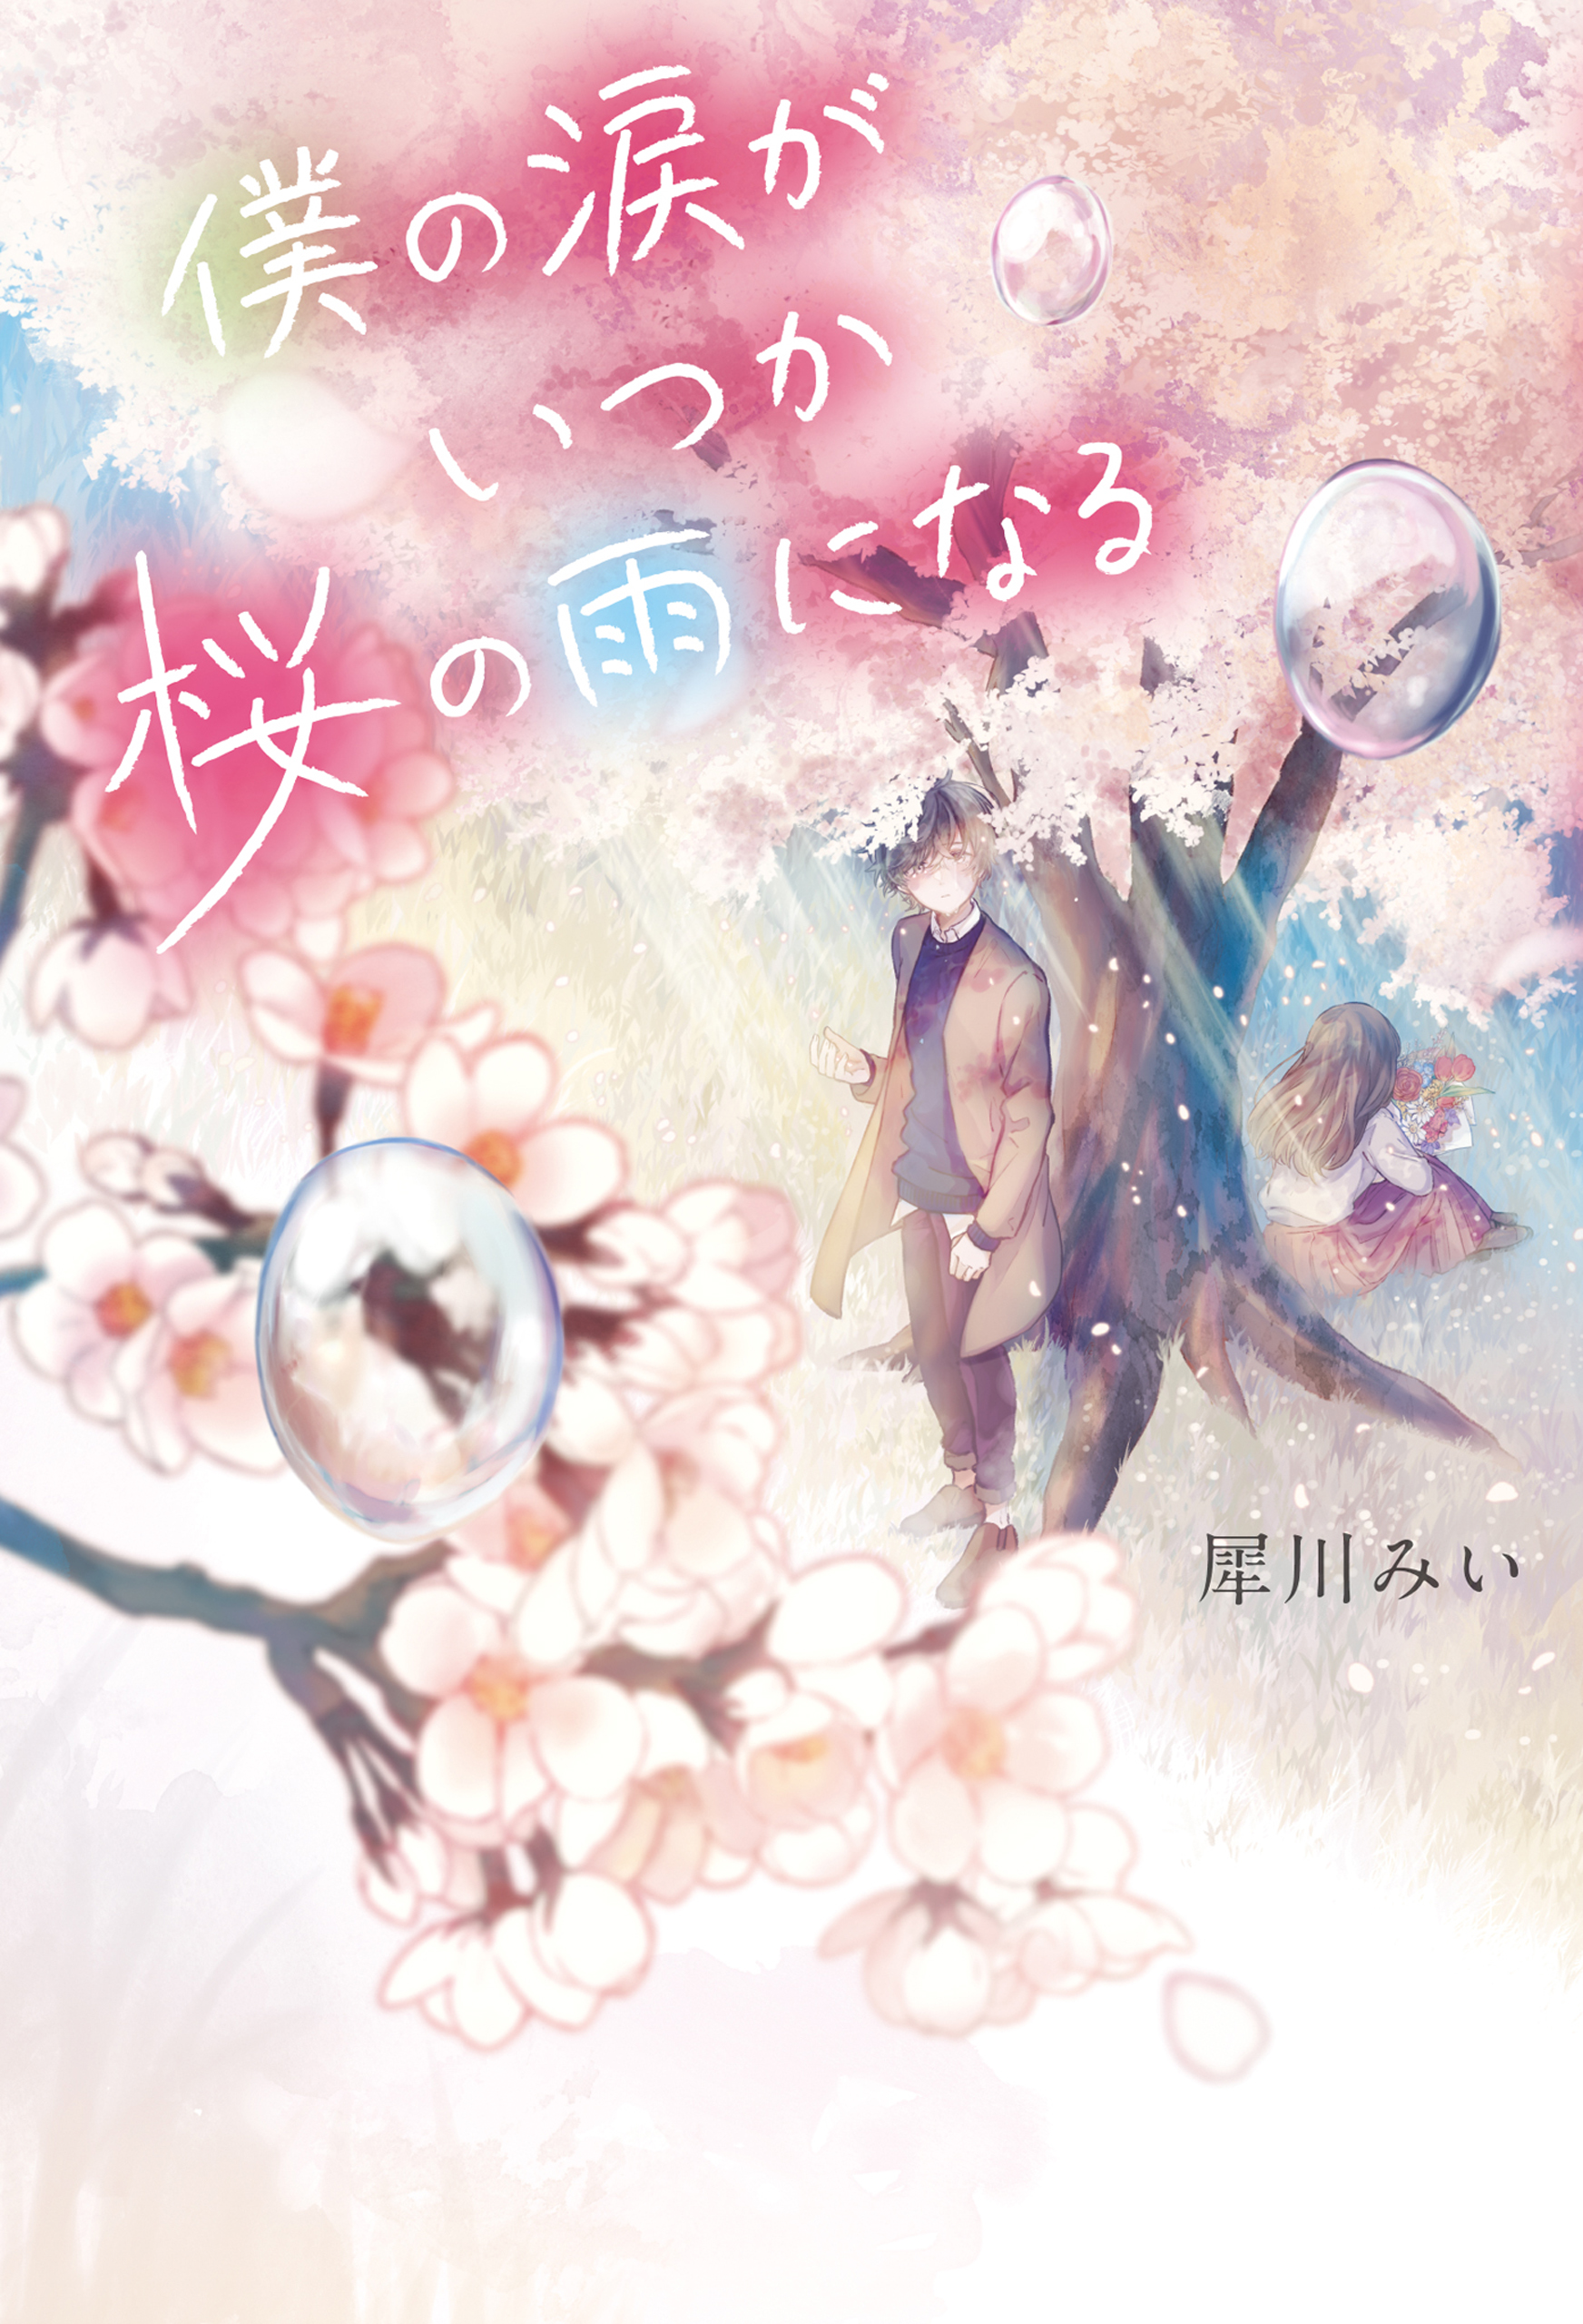 僕の涙がいつか桜の雨になる(書籍) - 電子書籍 | U-NEXT 初回600円分無料